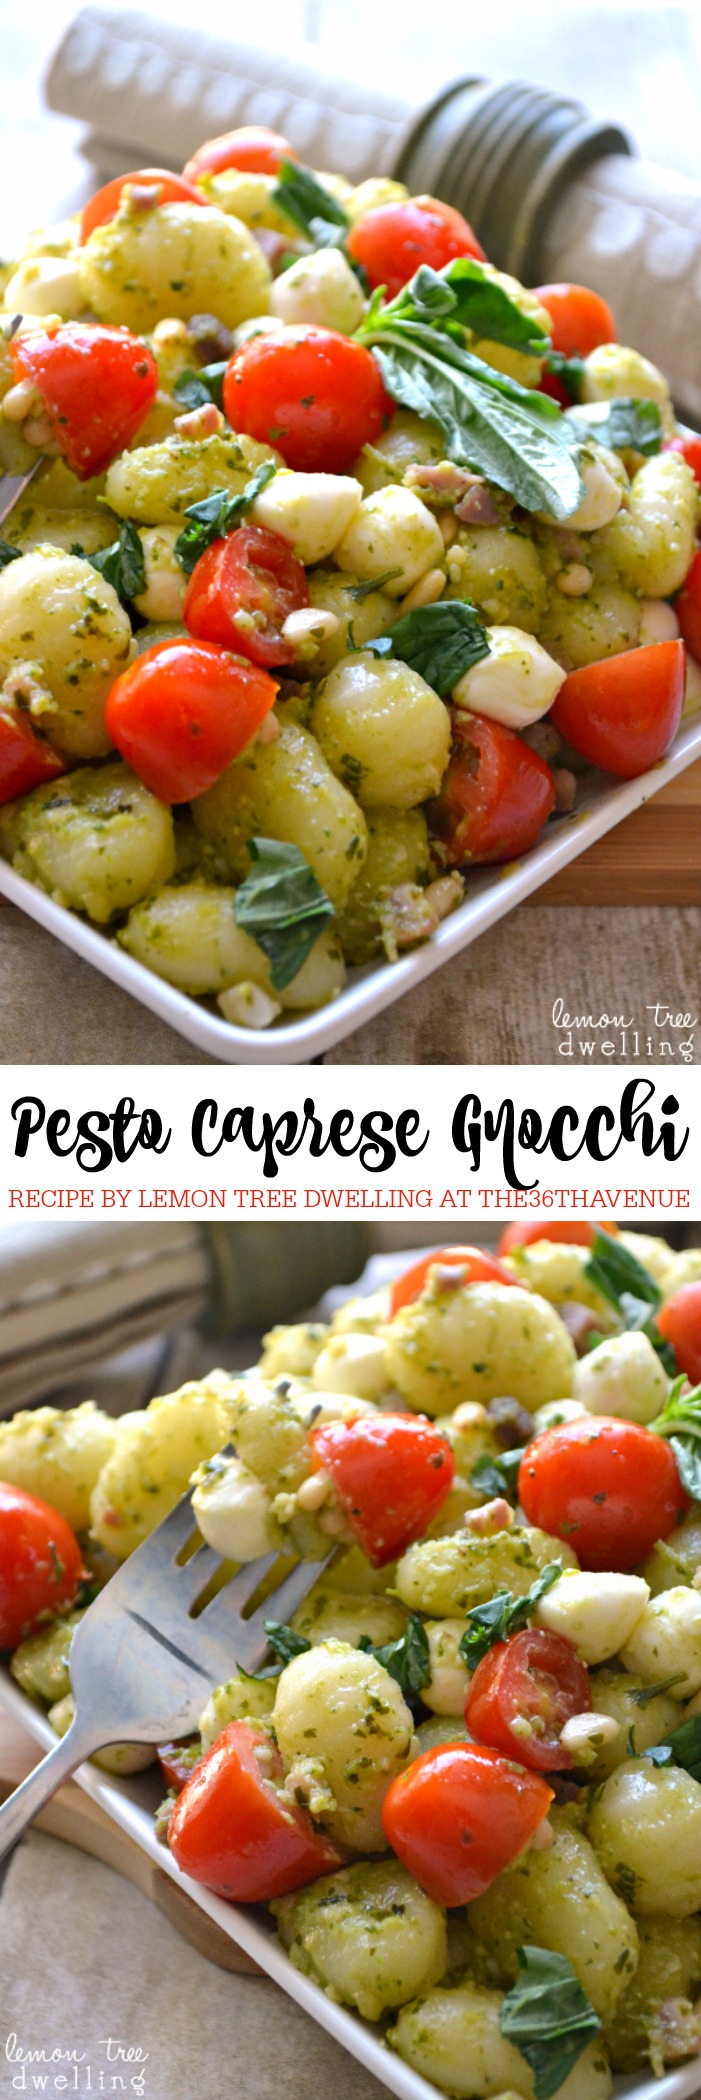 Pesto Caprese Gnocchi | The 36th AVENUE